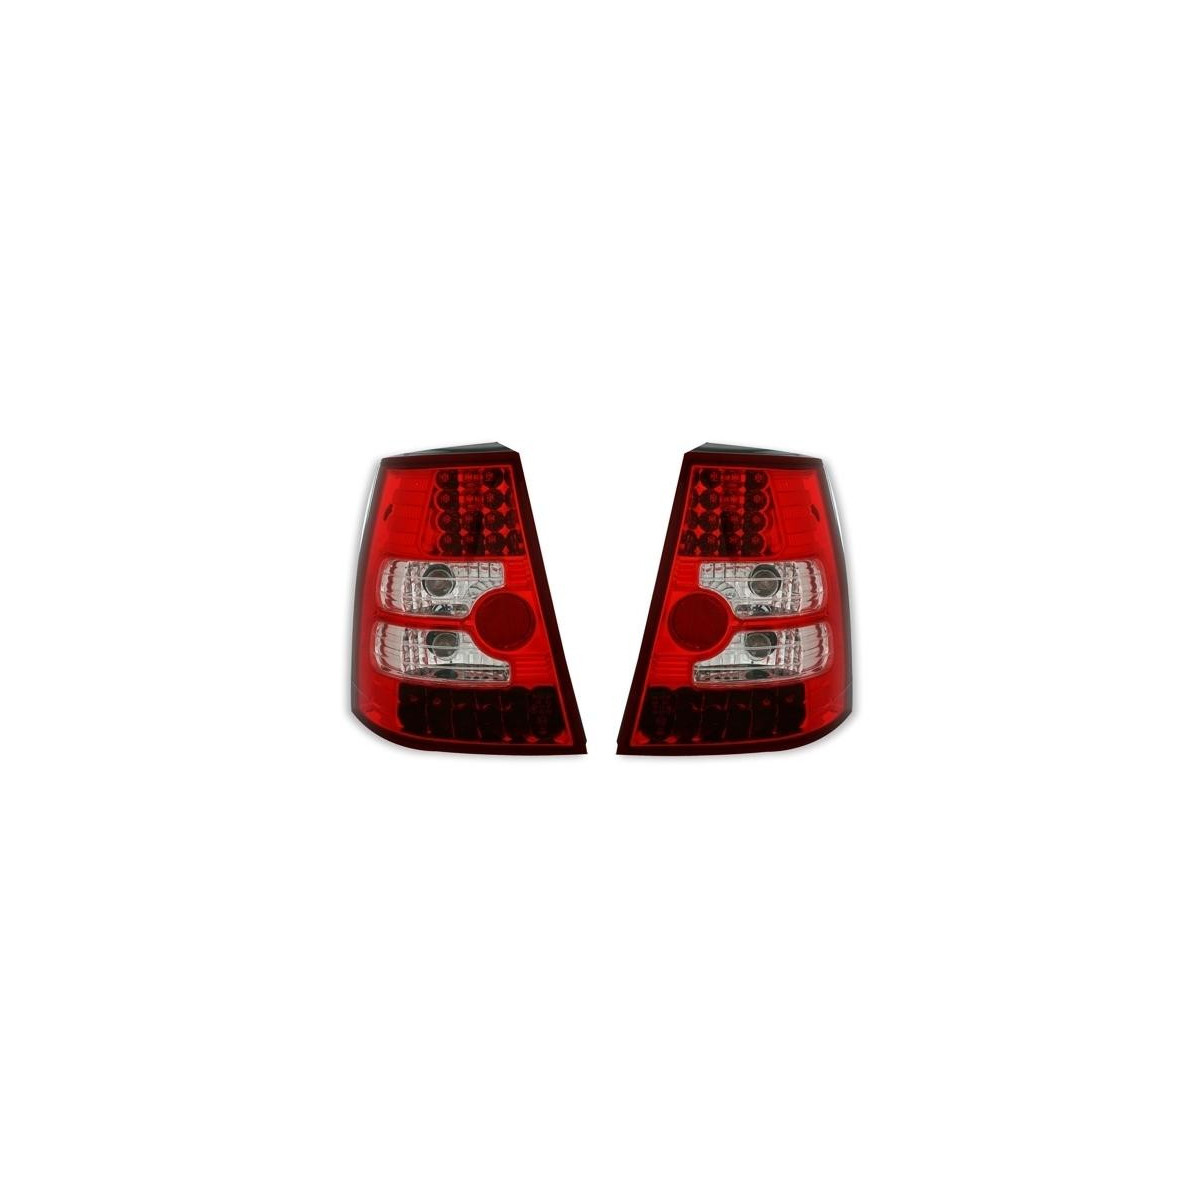 LAMPY TYLNE DIODOWE VW GOLF / BORA RED / WHITE